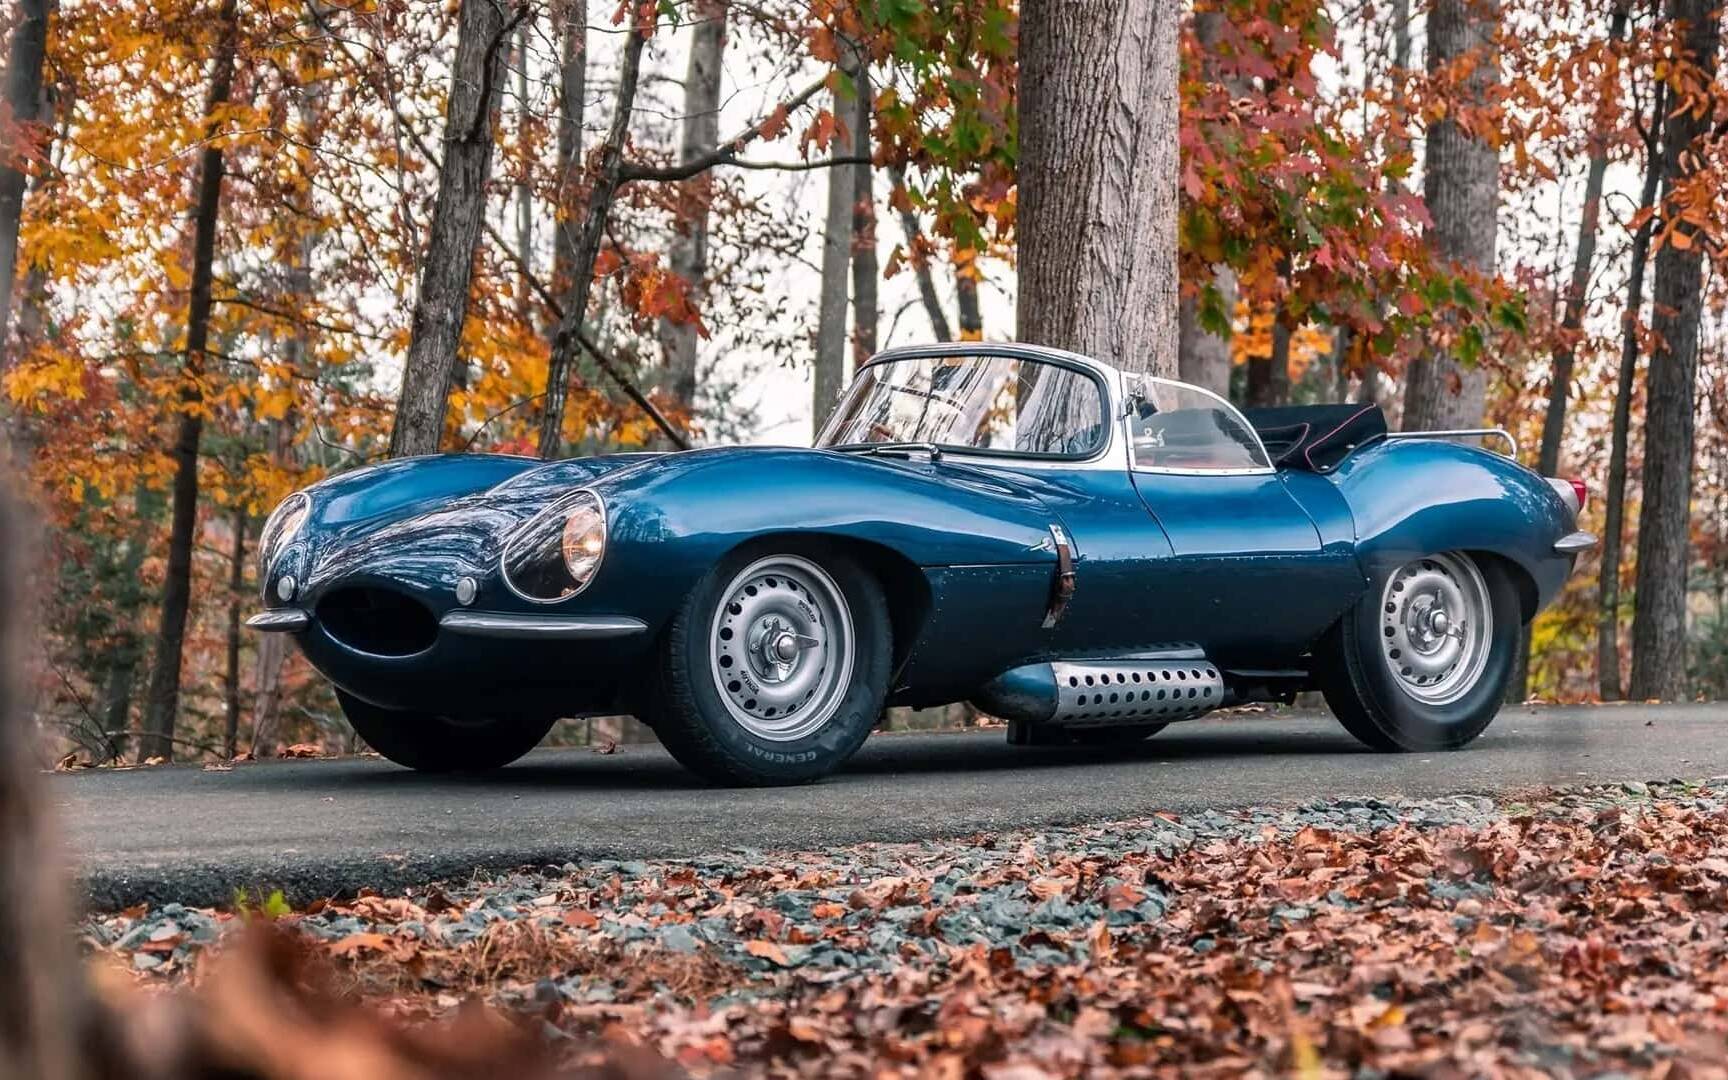 vendre - Cette Jaguar XKSS 1957 pourrait se vendre pour plus de 18 M$ 581468-cette-jaguar-xkss-1957-pourrait-se-vendre-pour-18-m